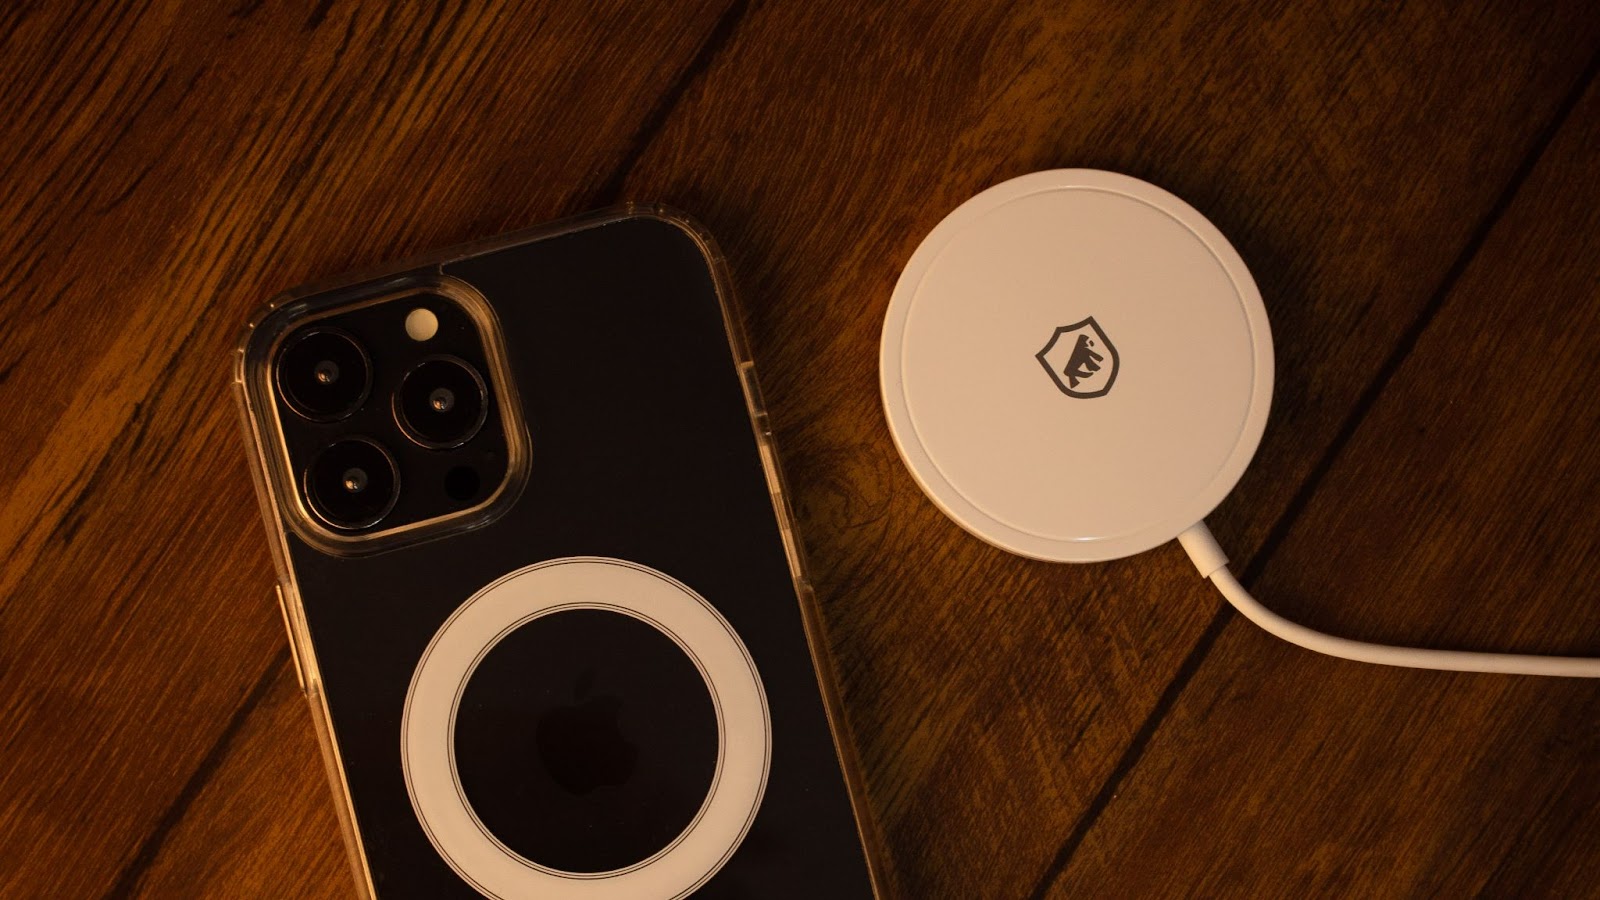 iPhone preto com capa magsafe da GShield ao lado de um carregador sem fio, em cima de uma mesa de madeira